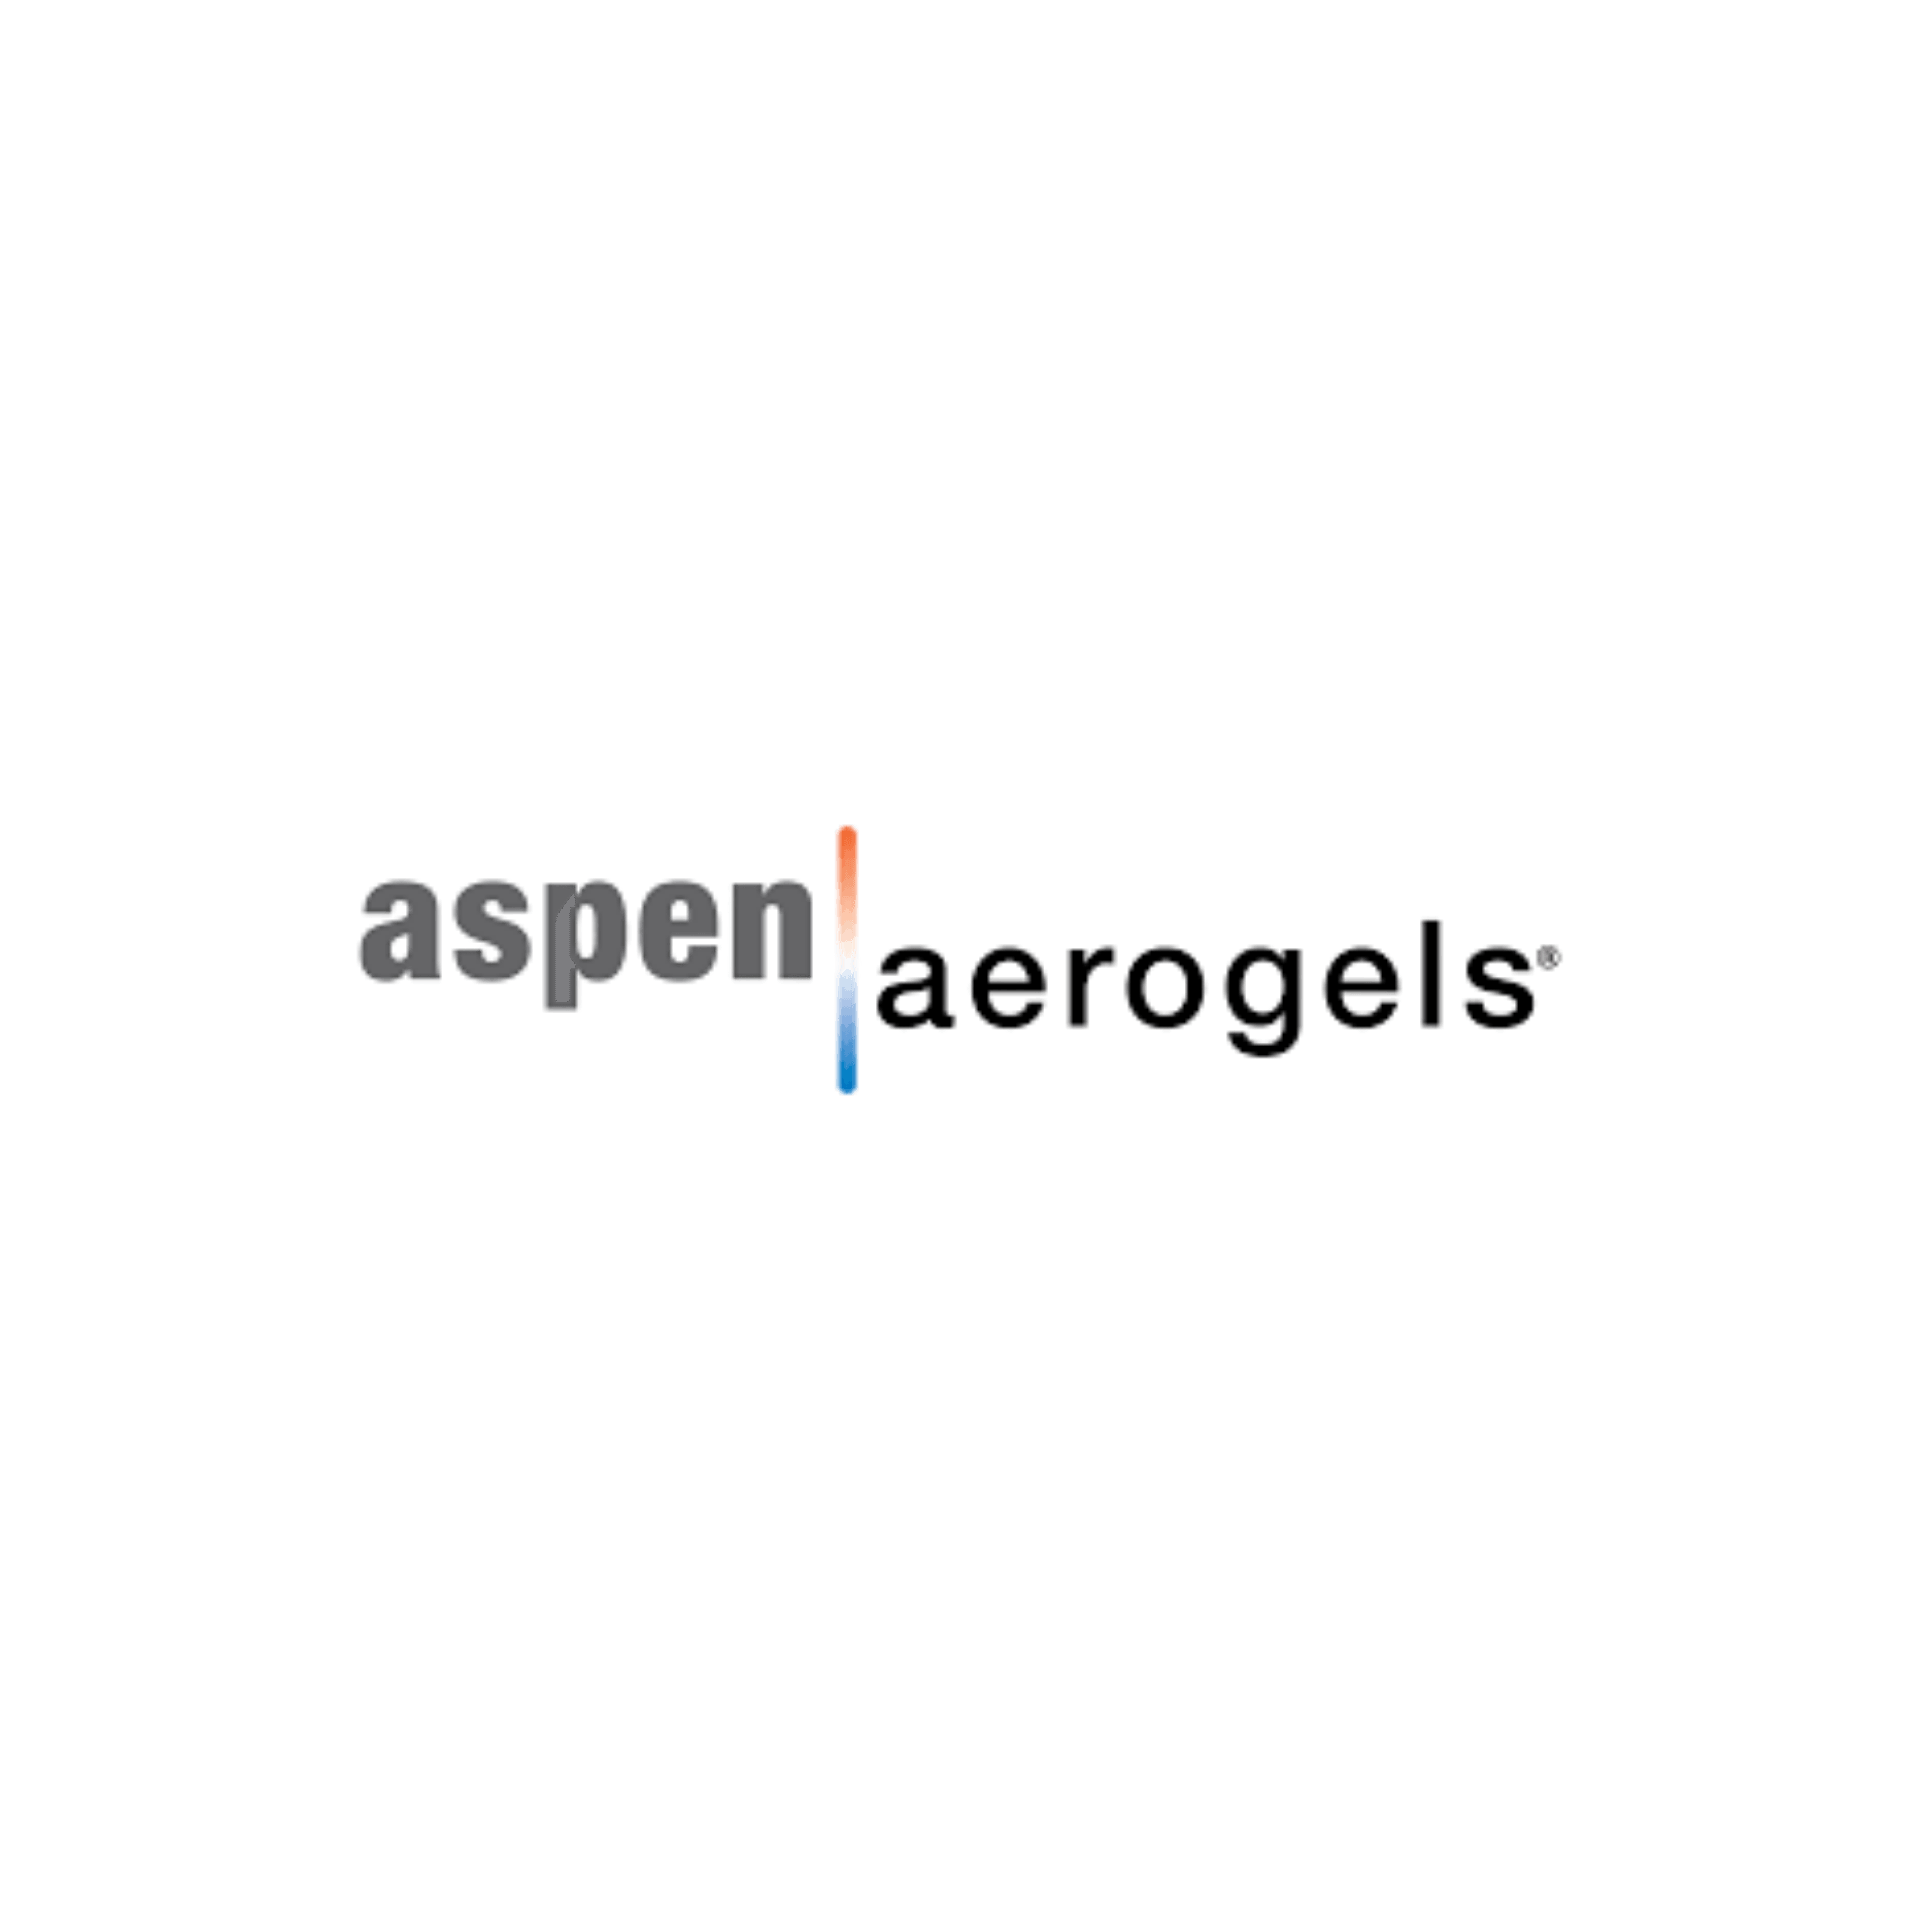 Aspen Aerogels Logo